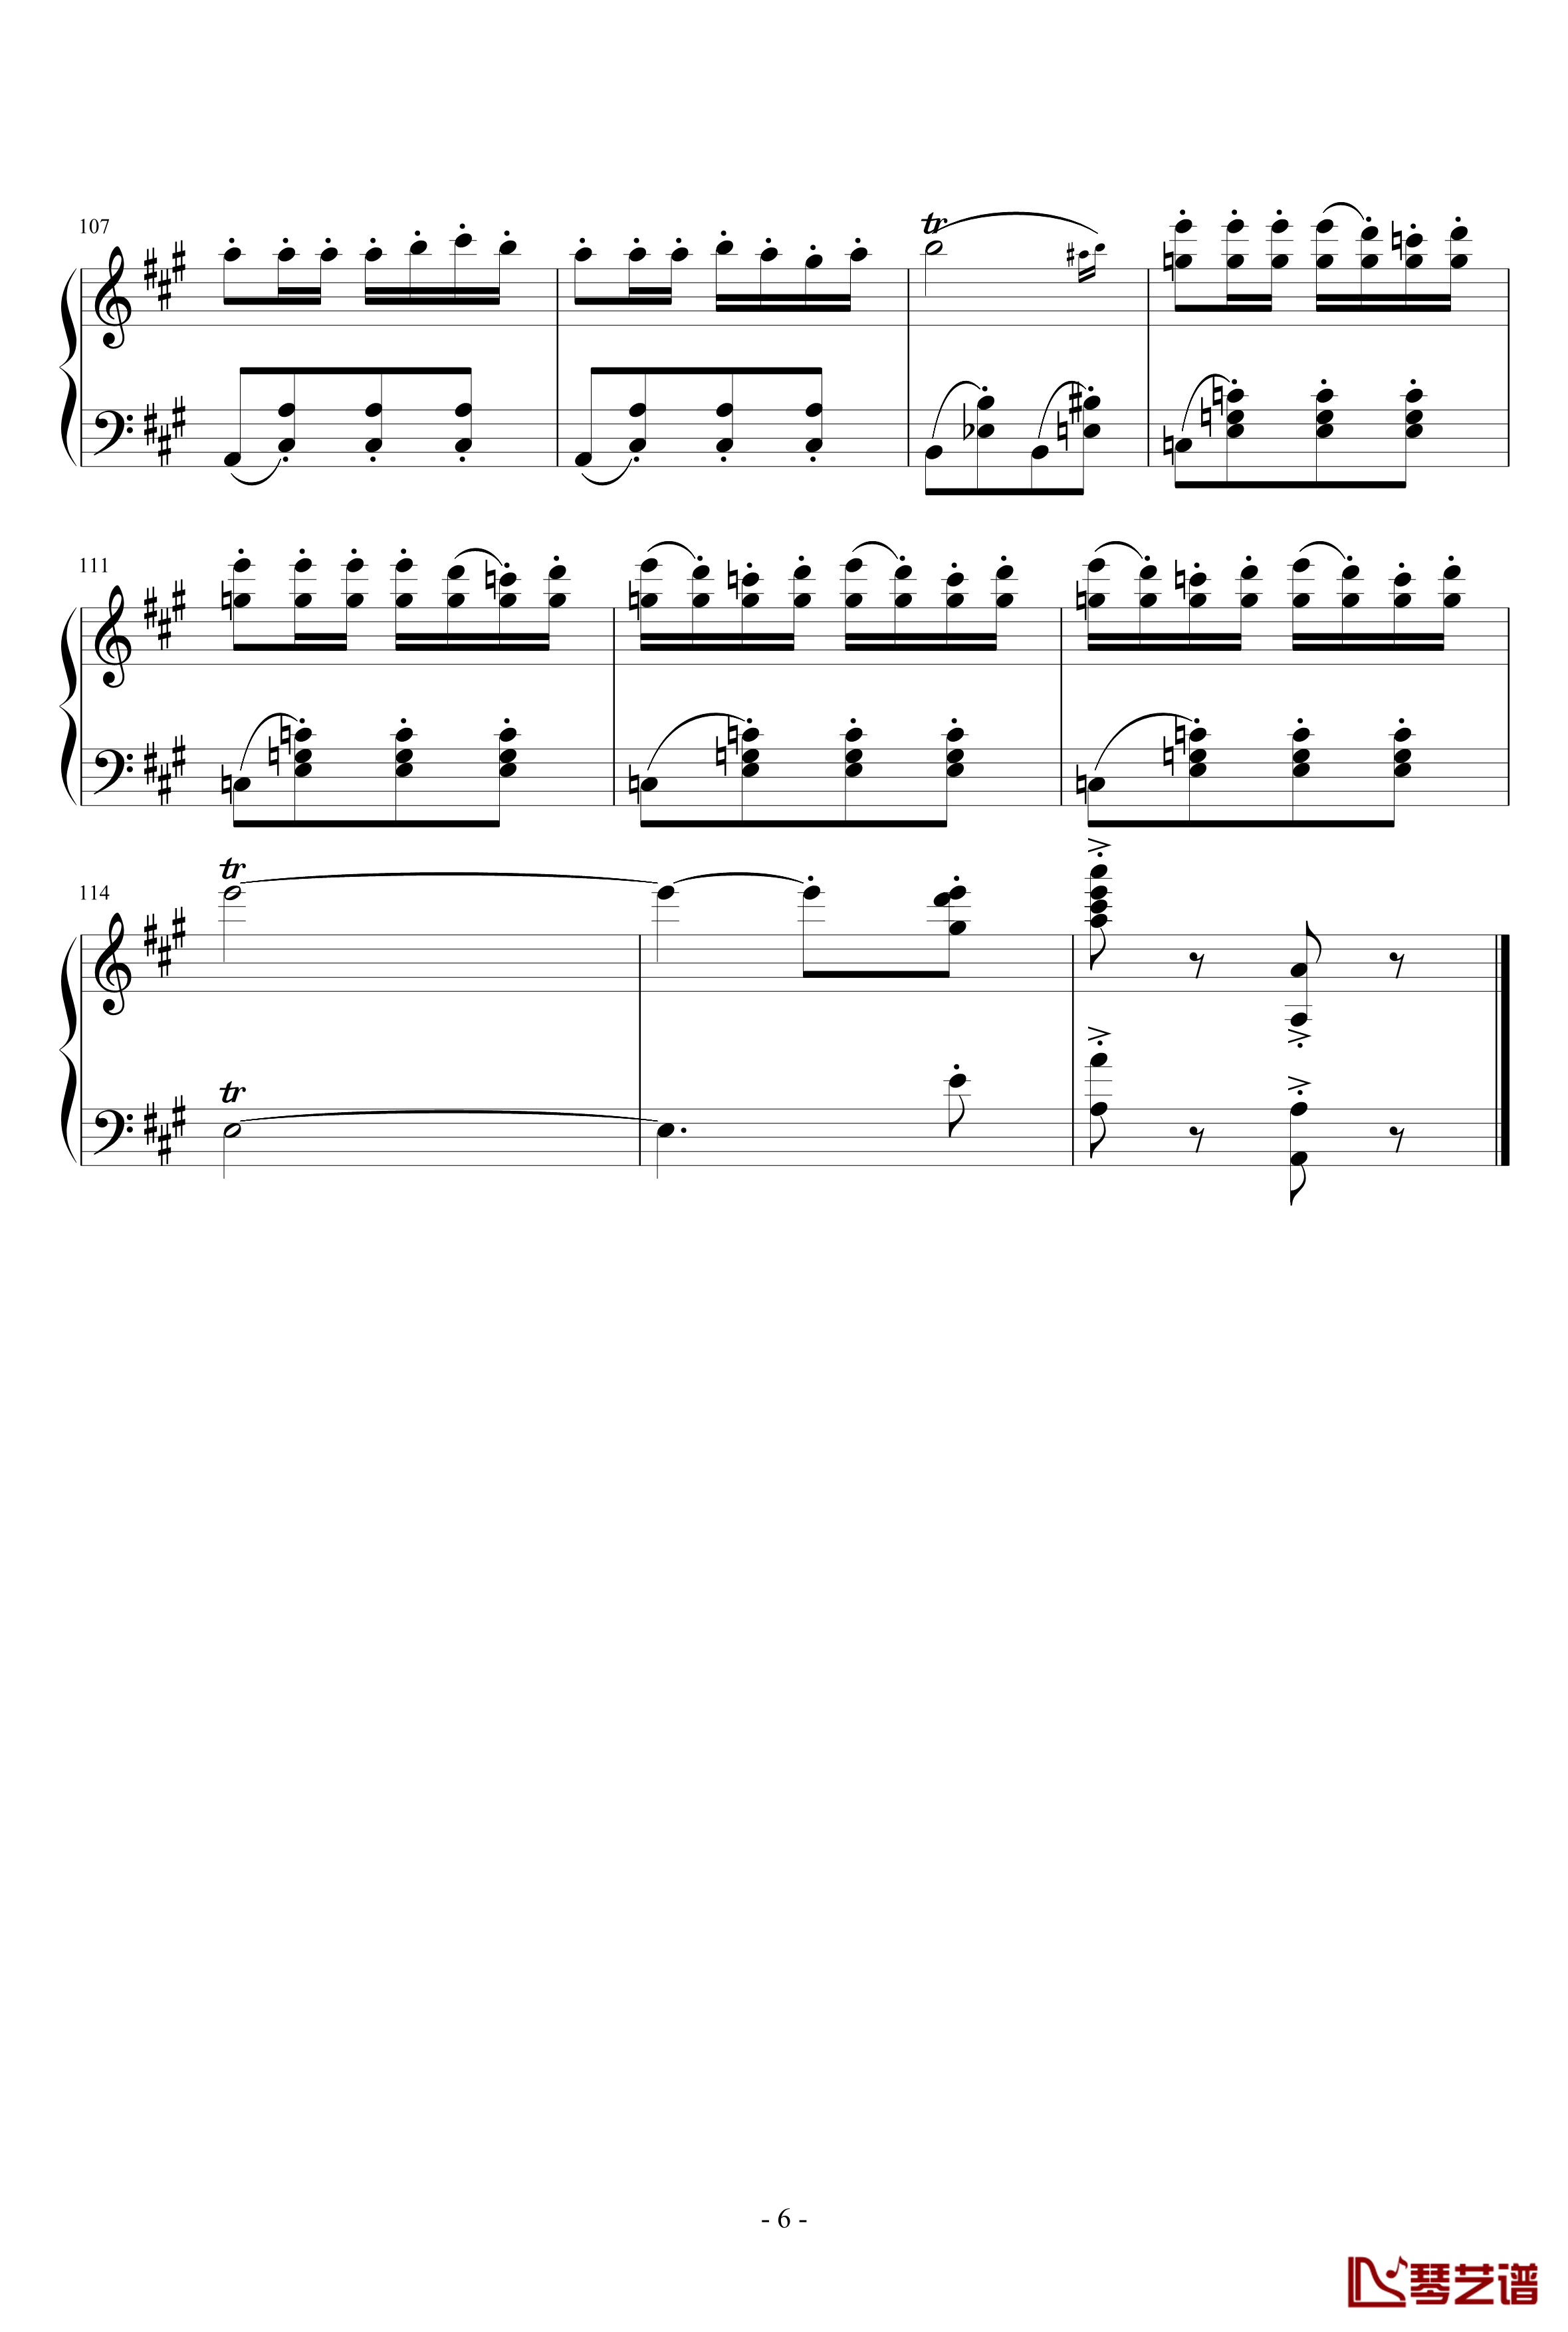 卡门序曲钢琴谱-完整版-比才-Bizet6